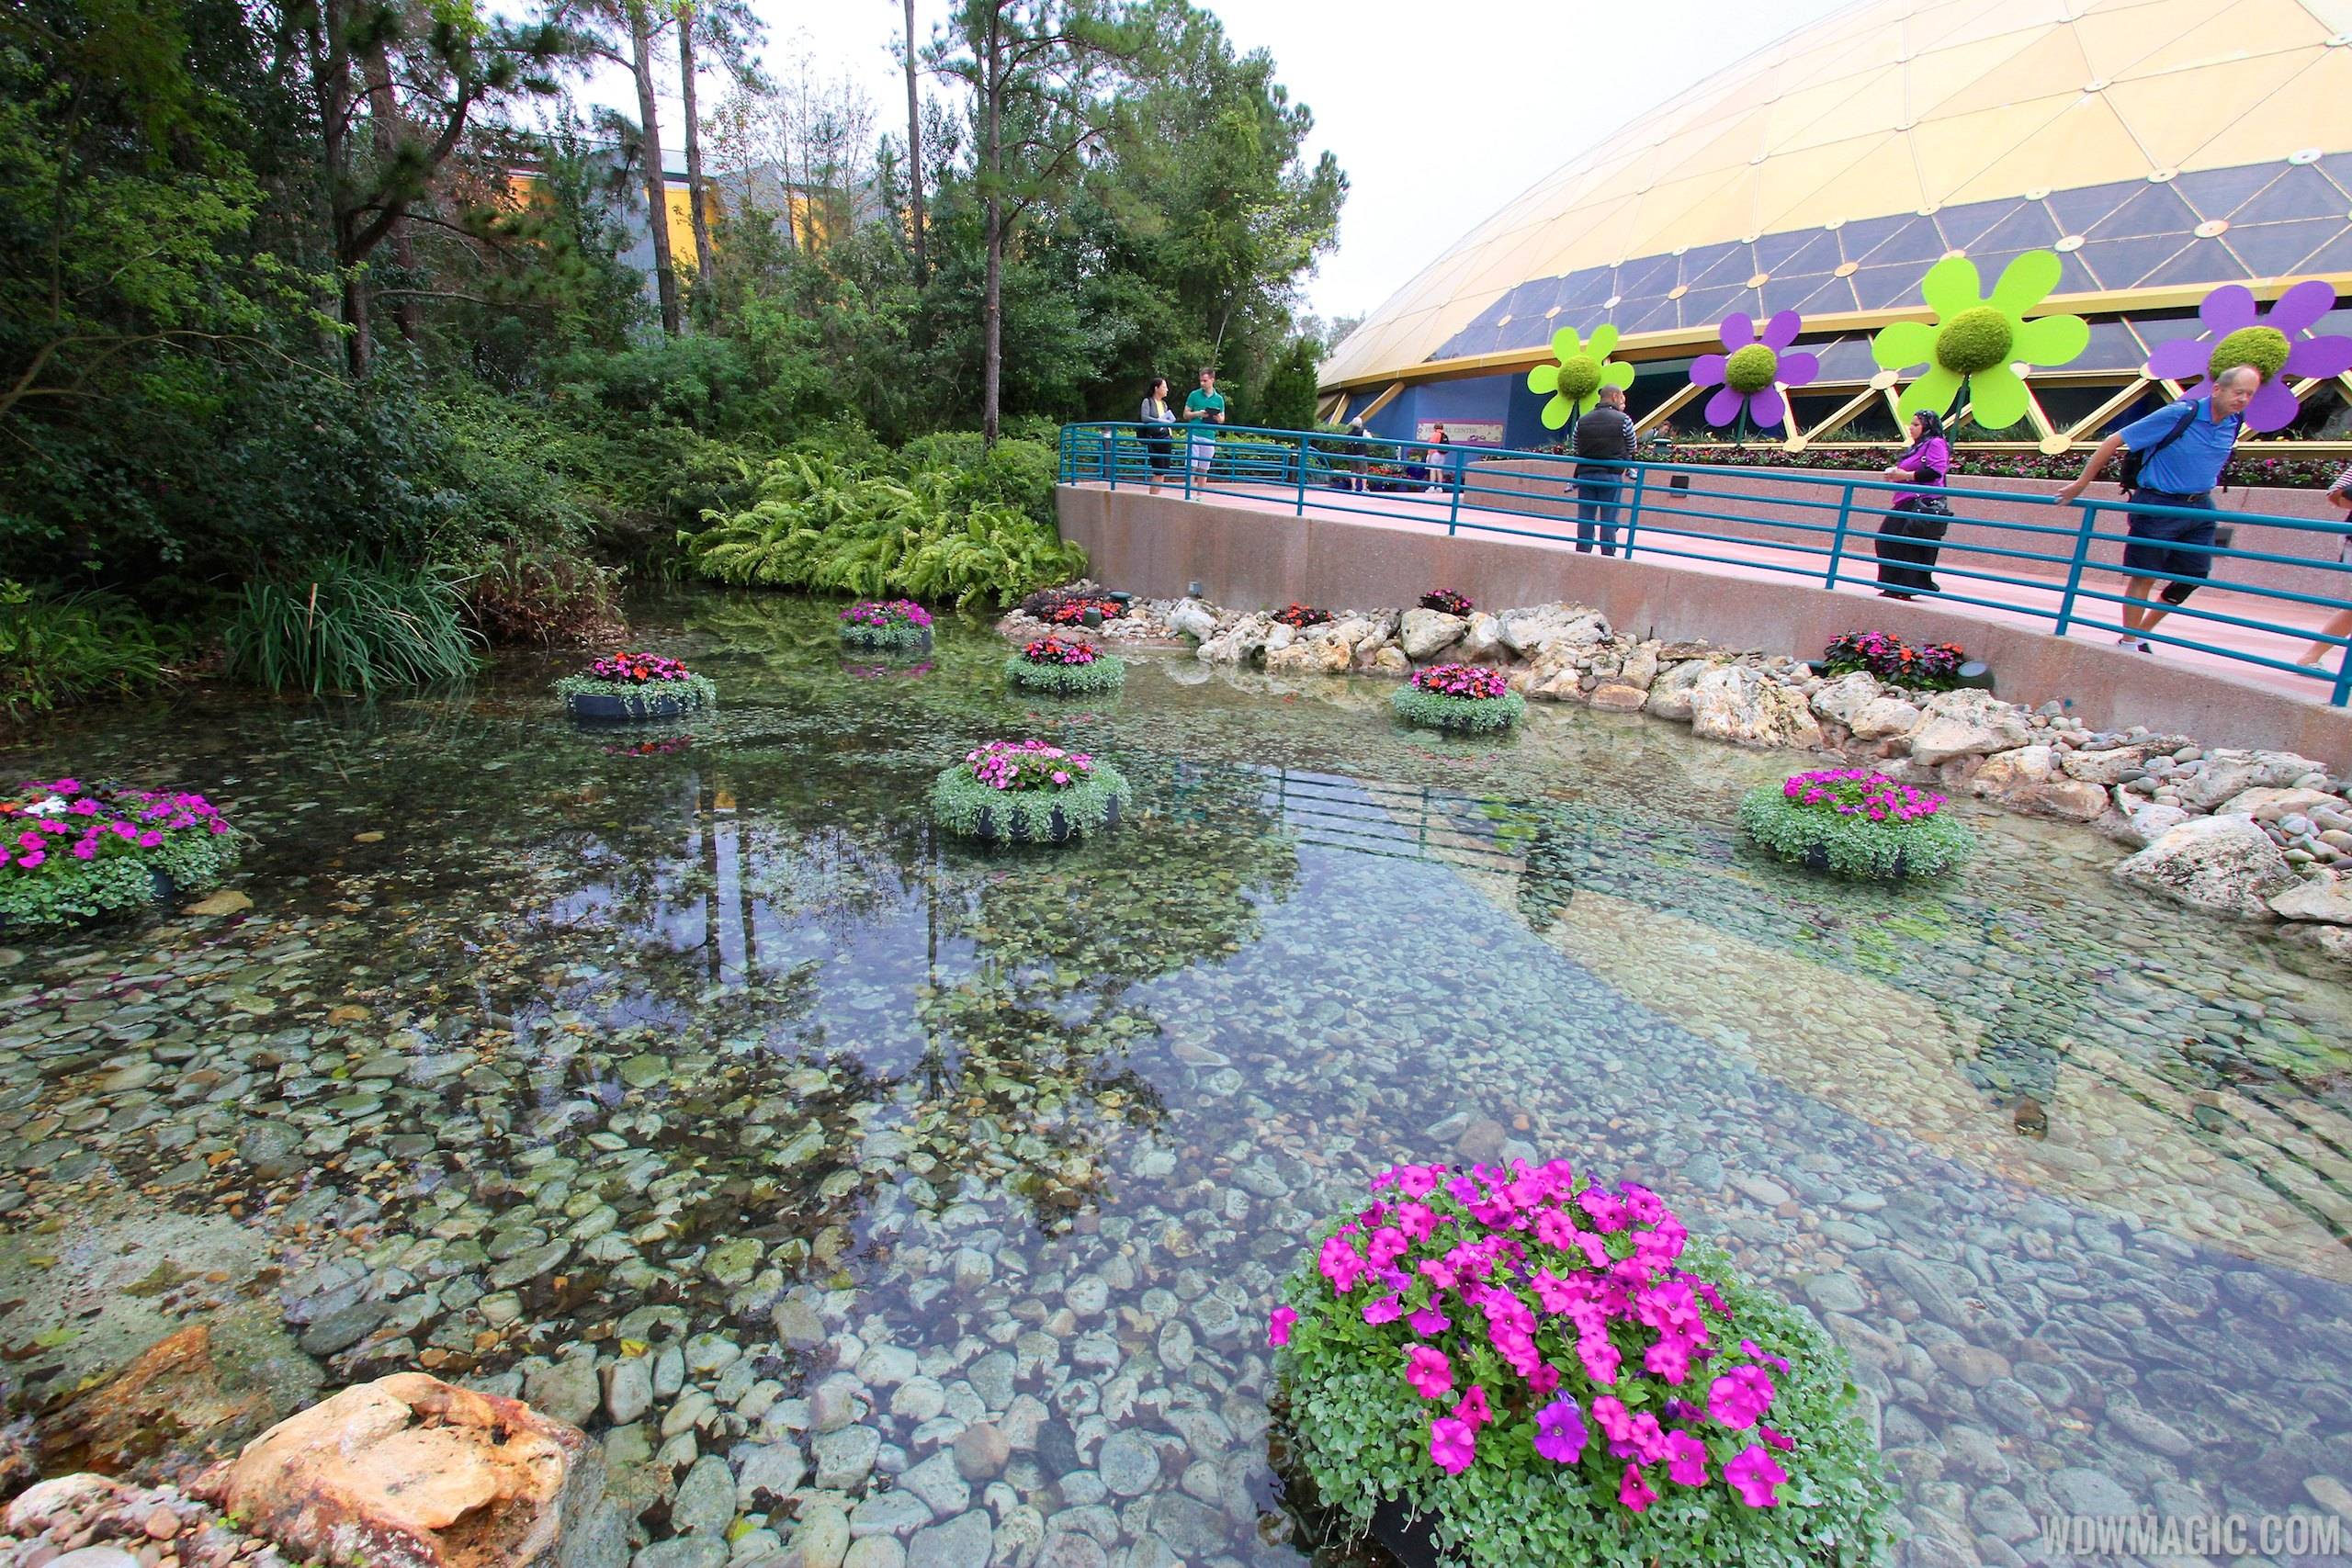 2014 Epcot Flower and Garden Festival - Festival Center